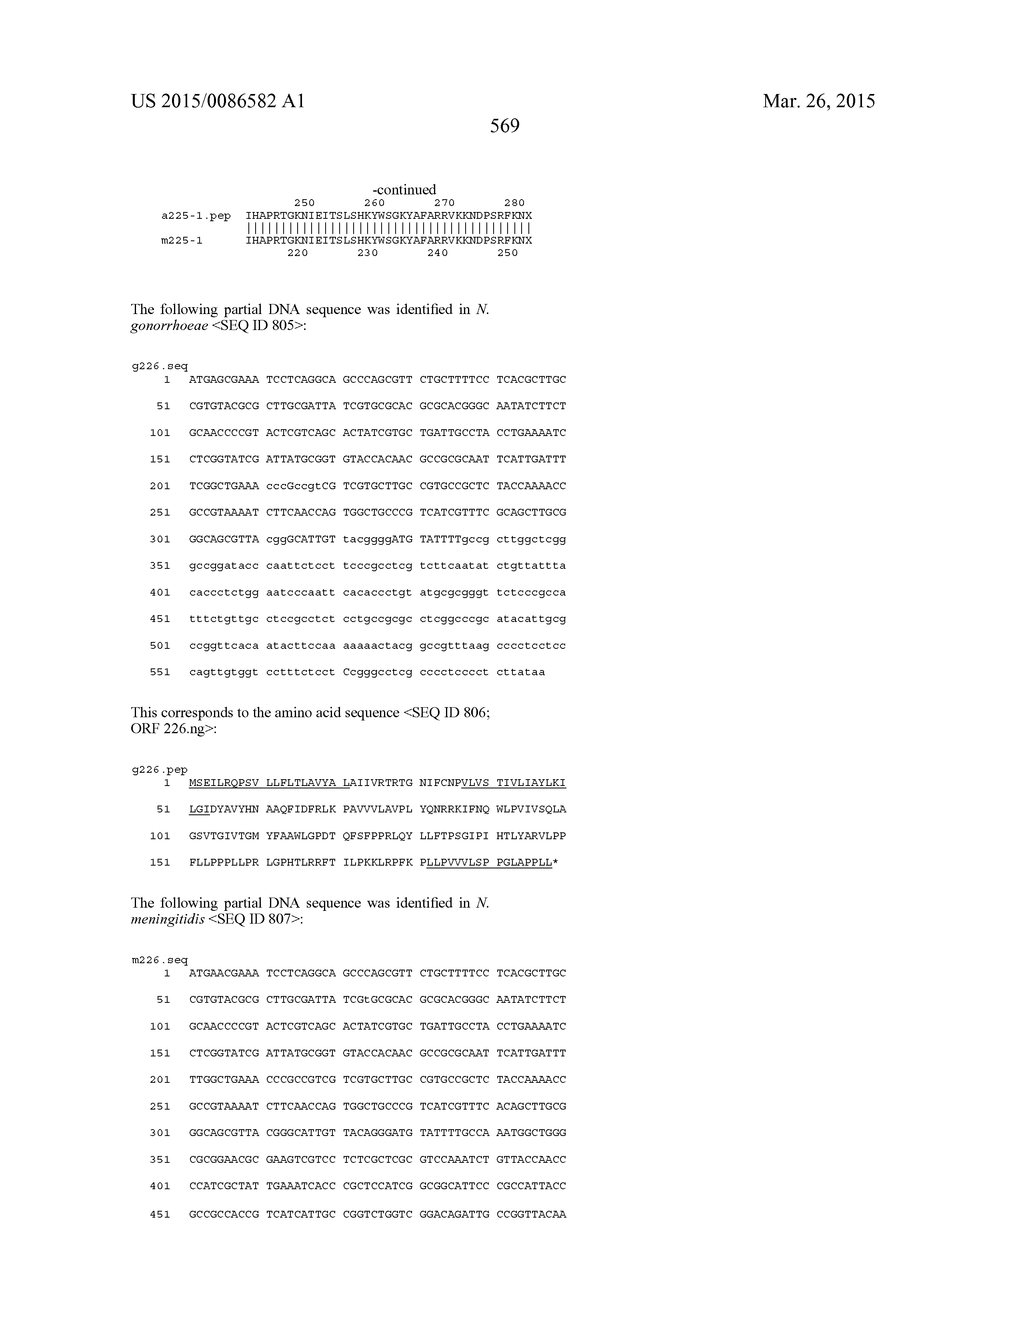 NEISSERIA MENINGITIDIS ANTIGENS AND COMPOSITIONS - diagram, schematic, and image 601